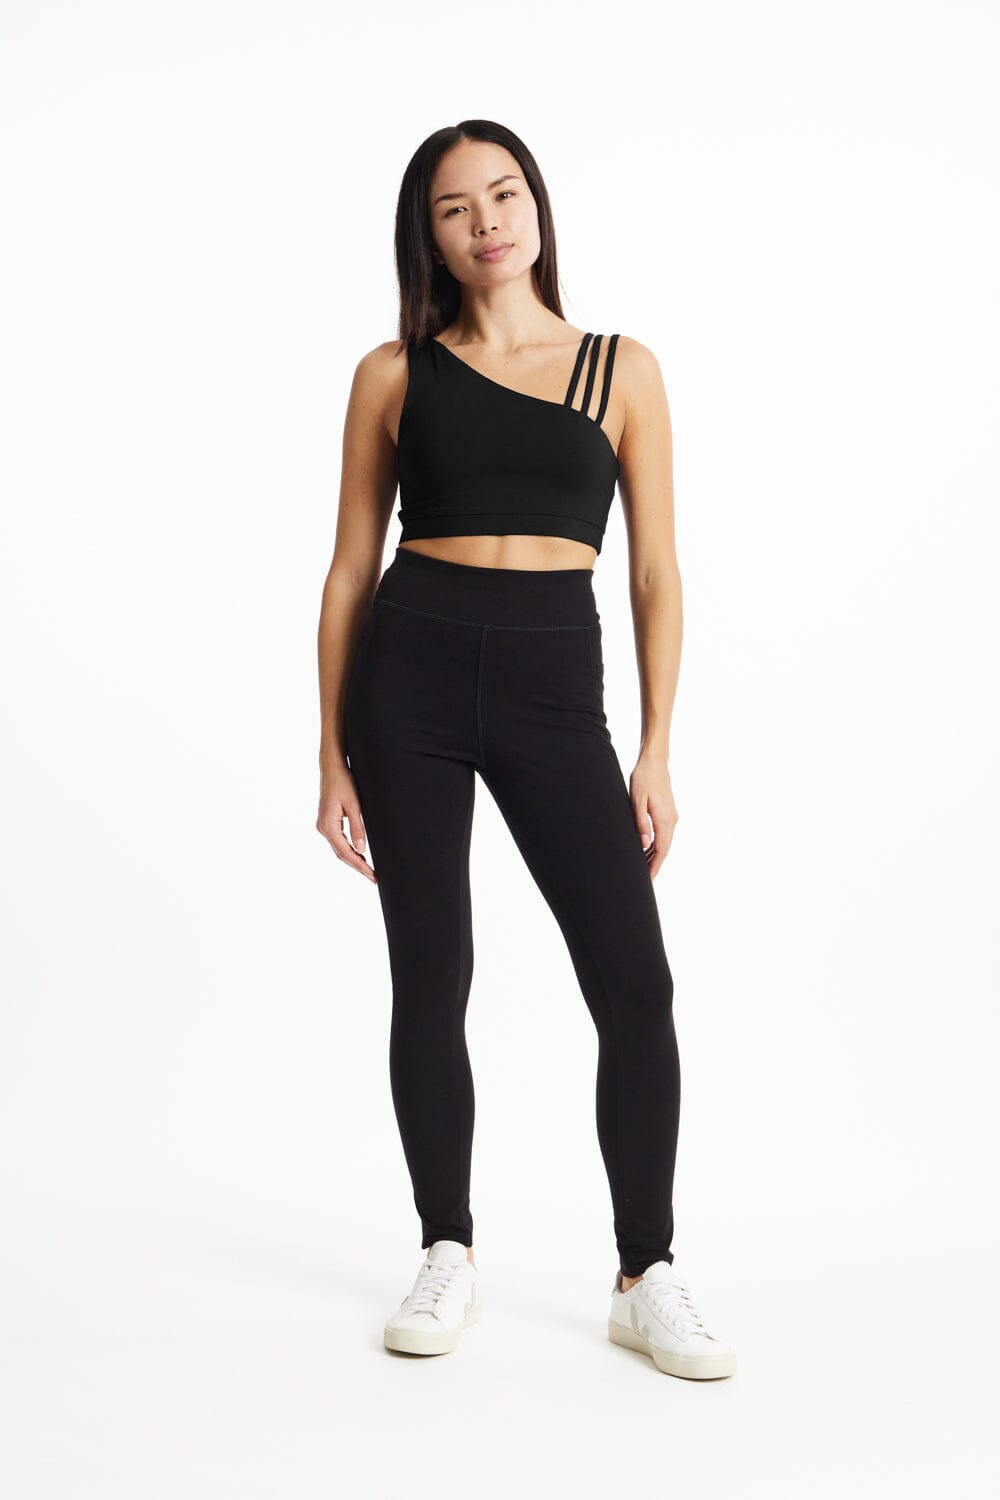 People Tree - W's Yoga Asymmetric Top - GOTS certified organic cotton - Weekendbee - sustainable sportswear